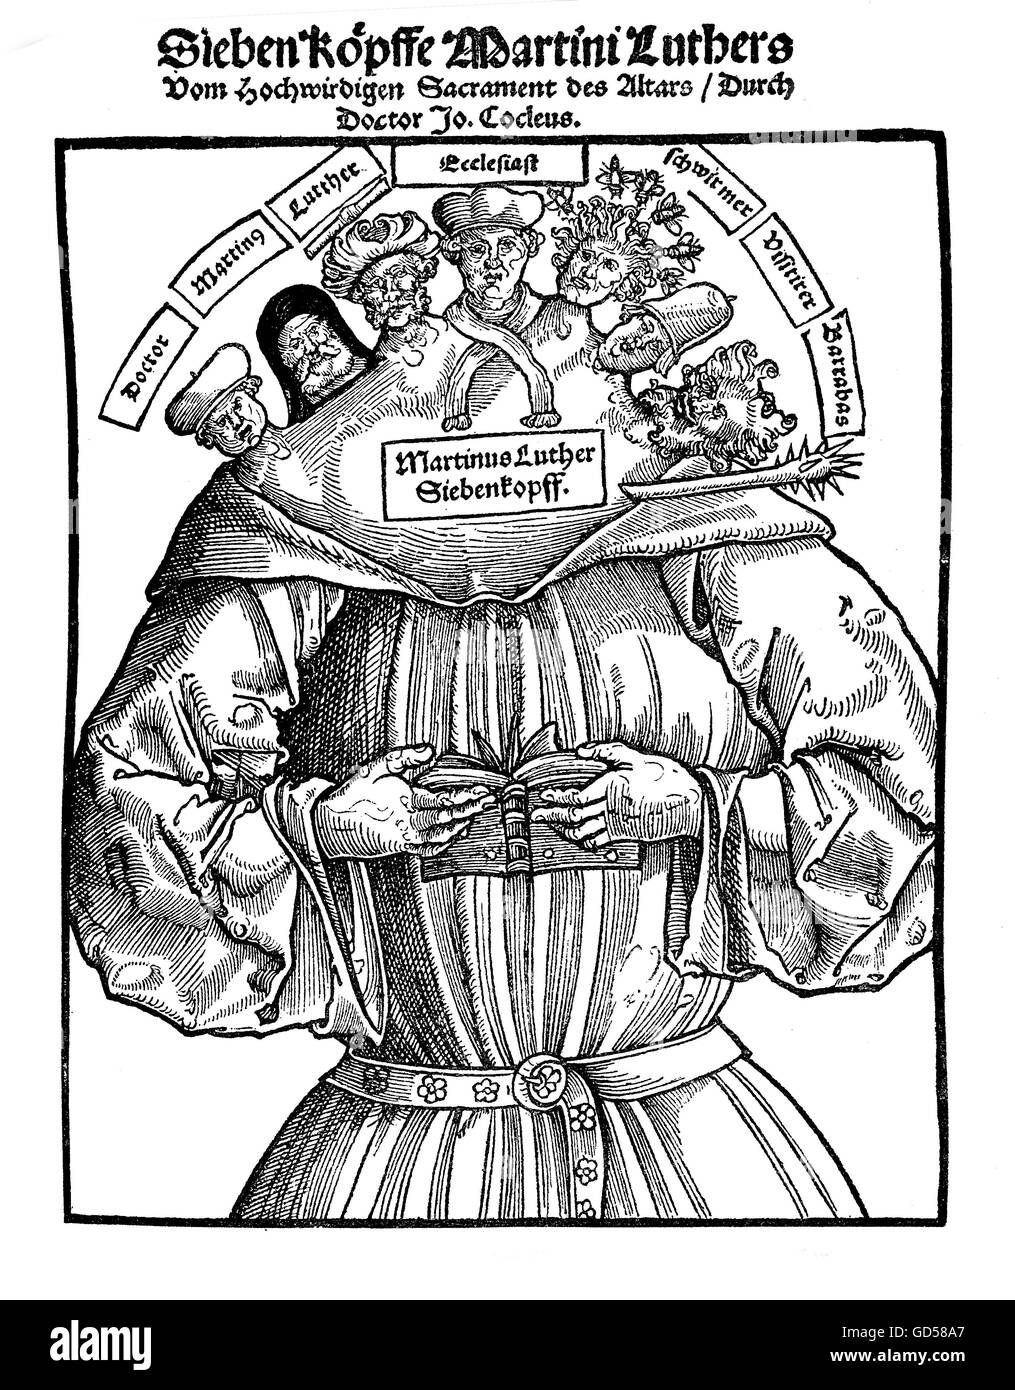 Die 7 Köpfe von Martin Luther sind beschriftet, von links nach rechts "Arzt, Martin, Luther, Kleriker, Vagabond, Pfister (Backer?), Barabbas. Die Satire, die angeblich versteckt sich hinter diesen Worten sieht eher kryptisch. XVI. Jahrhundert. Stockfoto